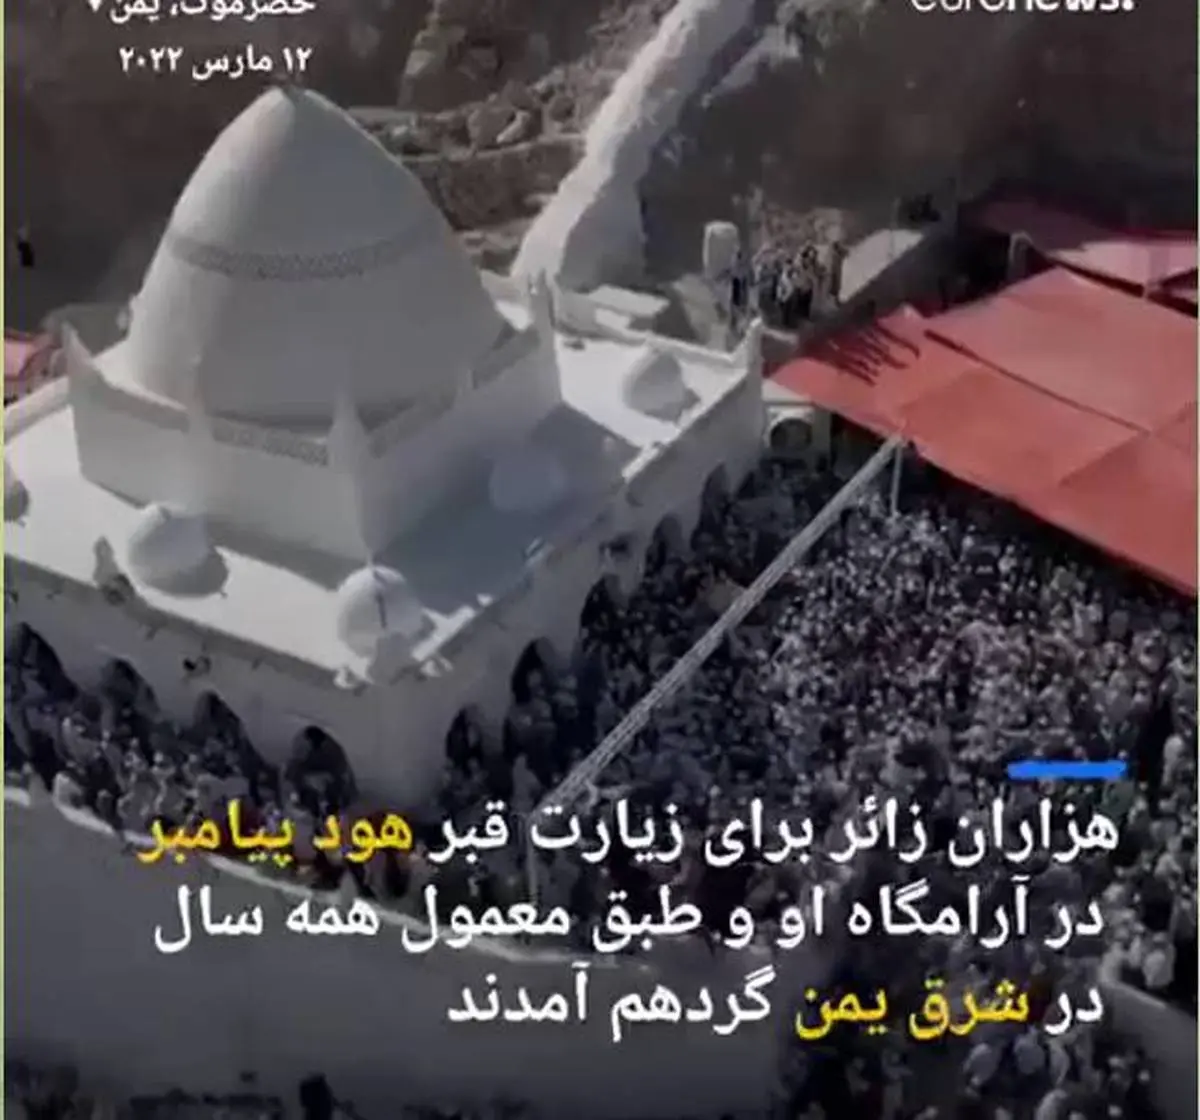 مراسم سالیانه زیارت مقبره هود پیامبر در یمن + ویدئو 